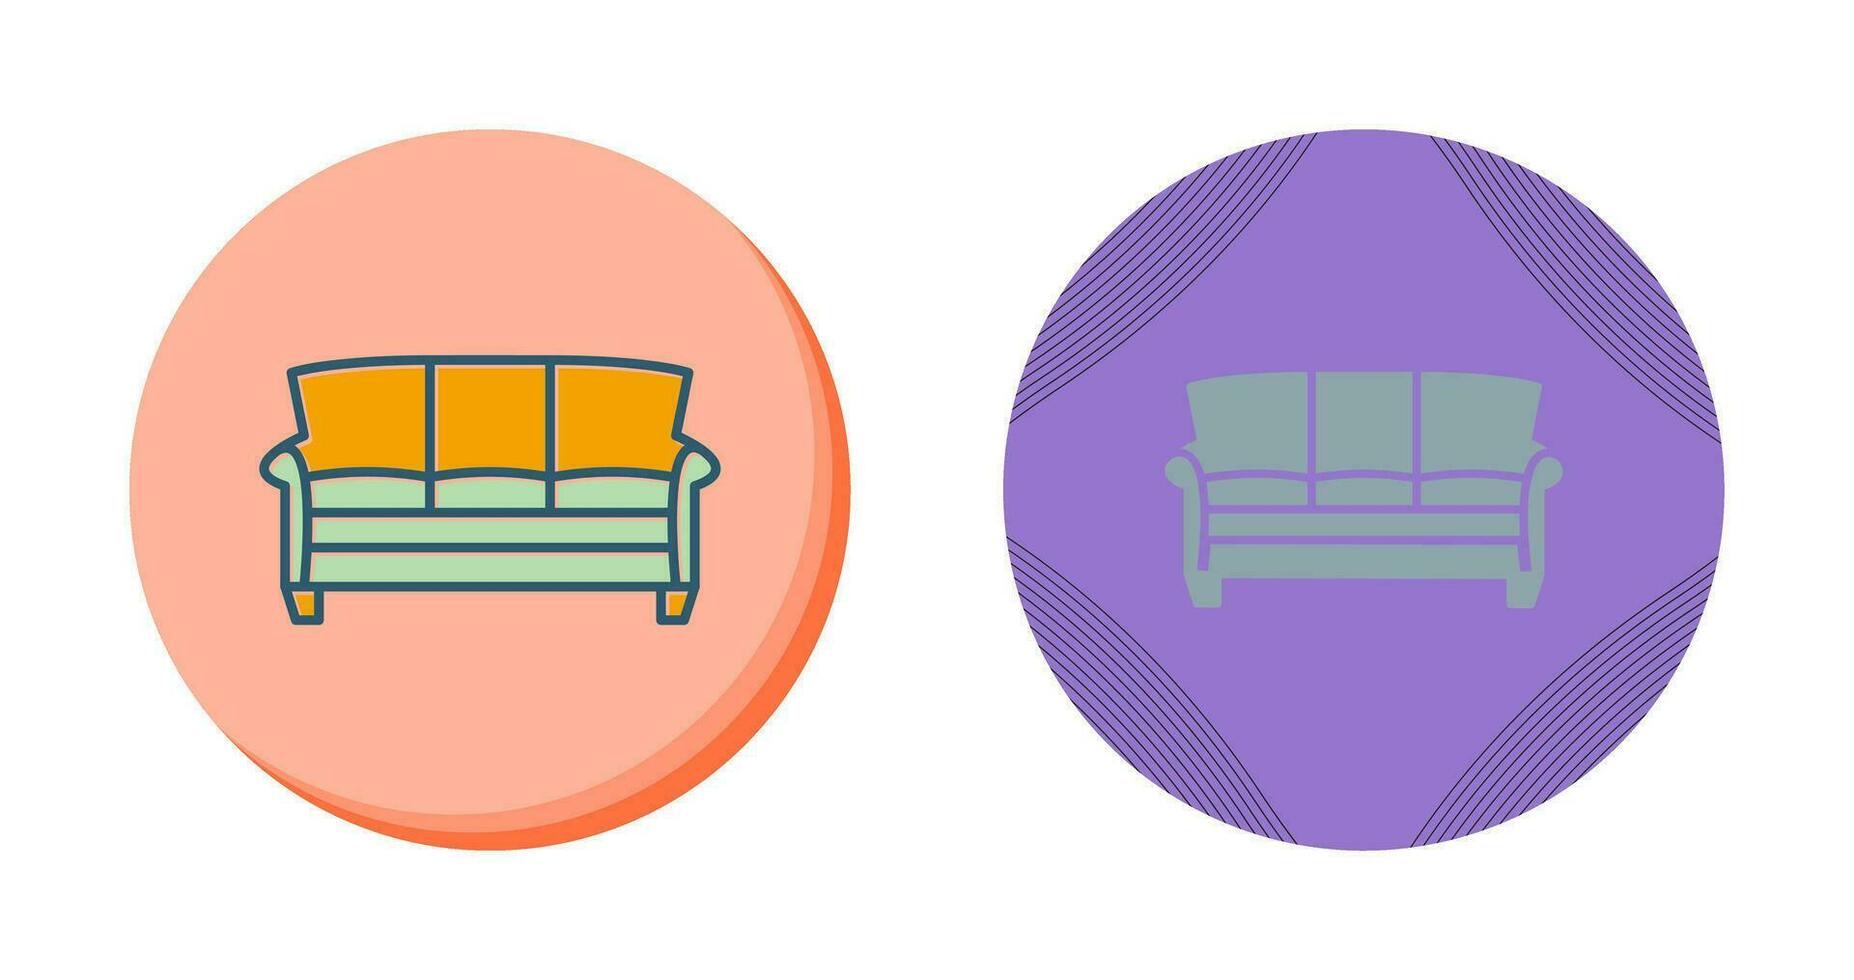 icône de vecteur de grand canapé